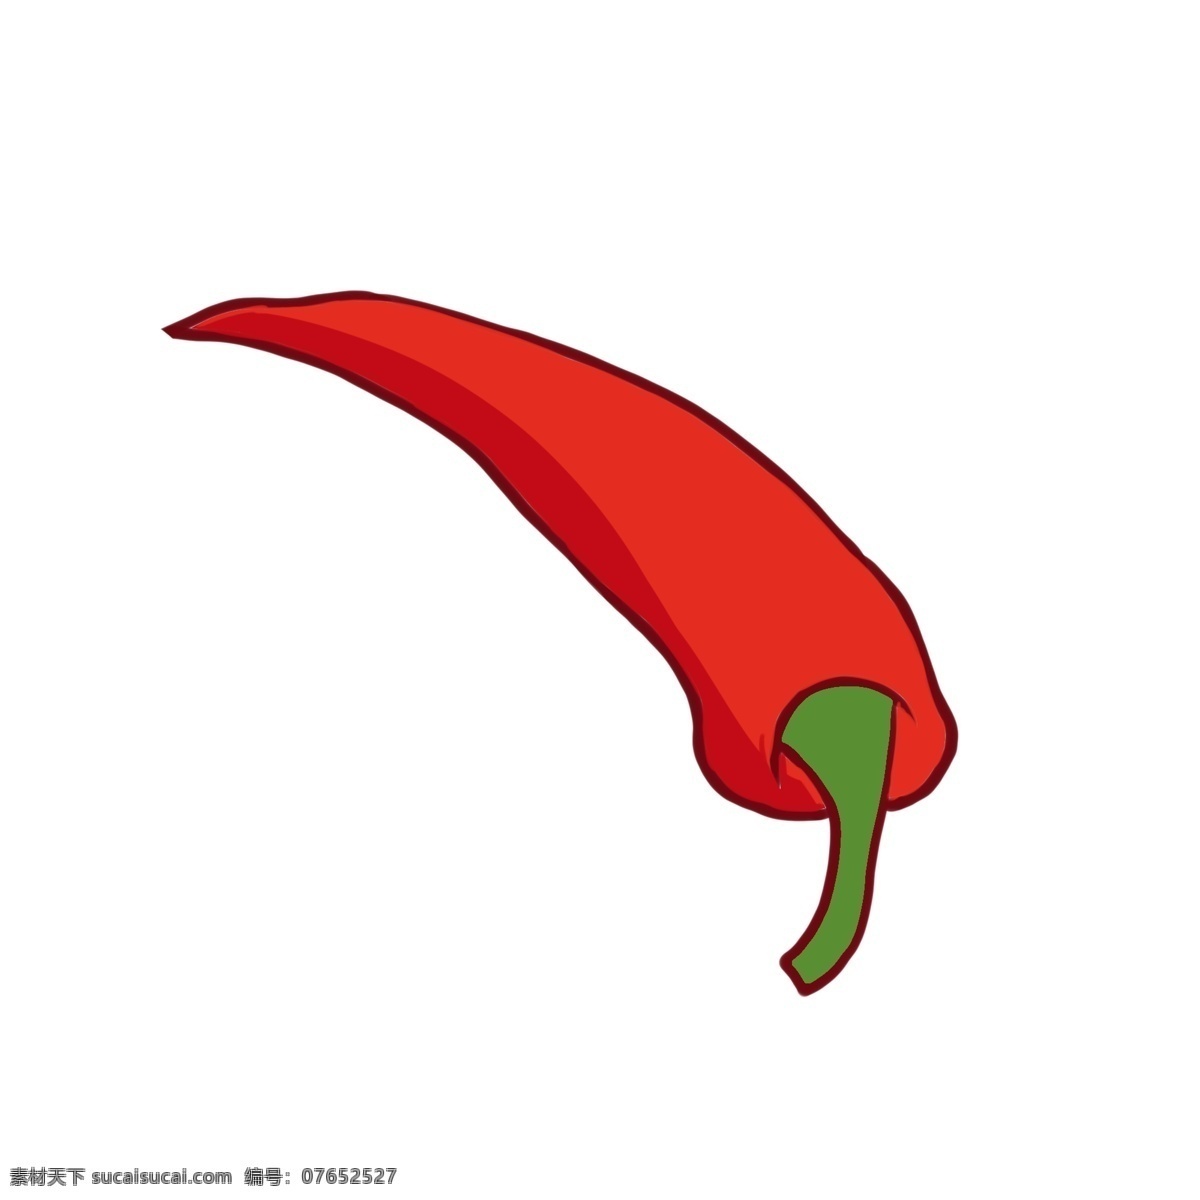 手绘 辣椒 蔬菜 卡通 红色 红色卡通 吃货 插画 美食 食物 餐饮 食品节